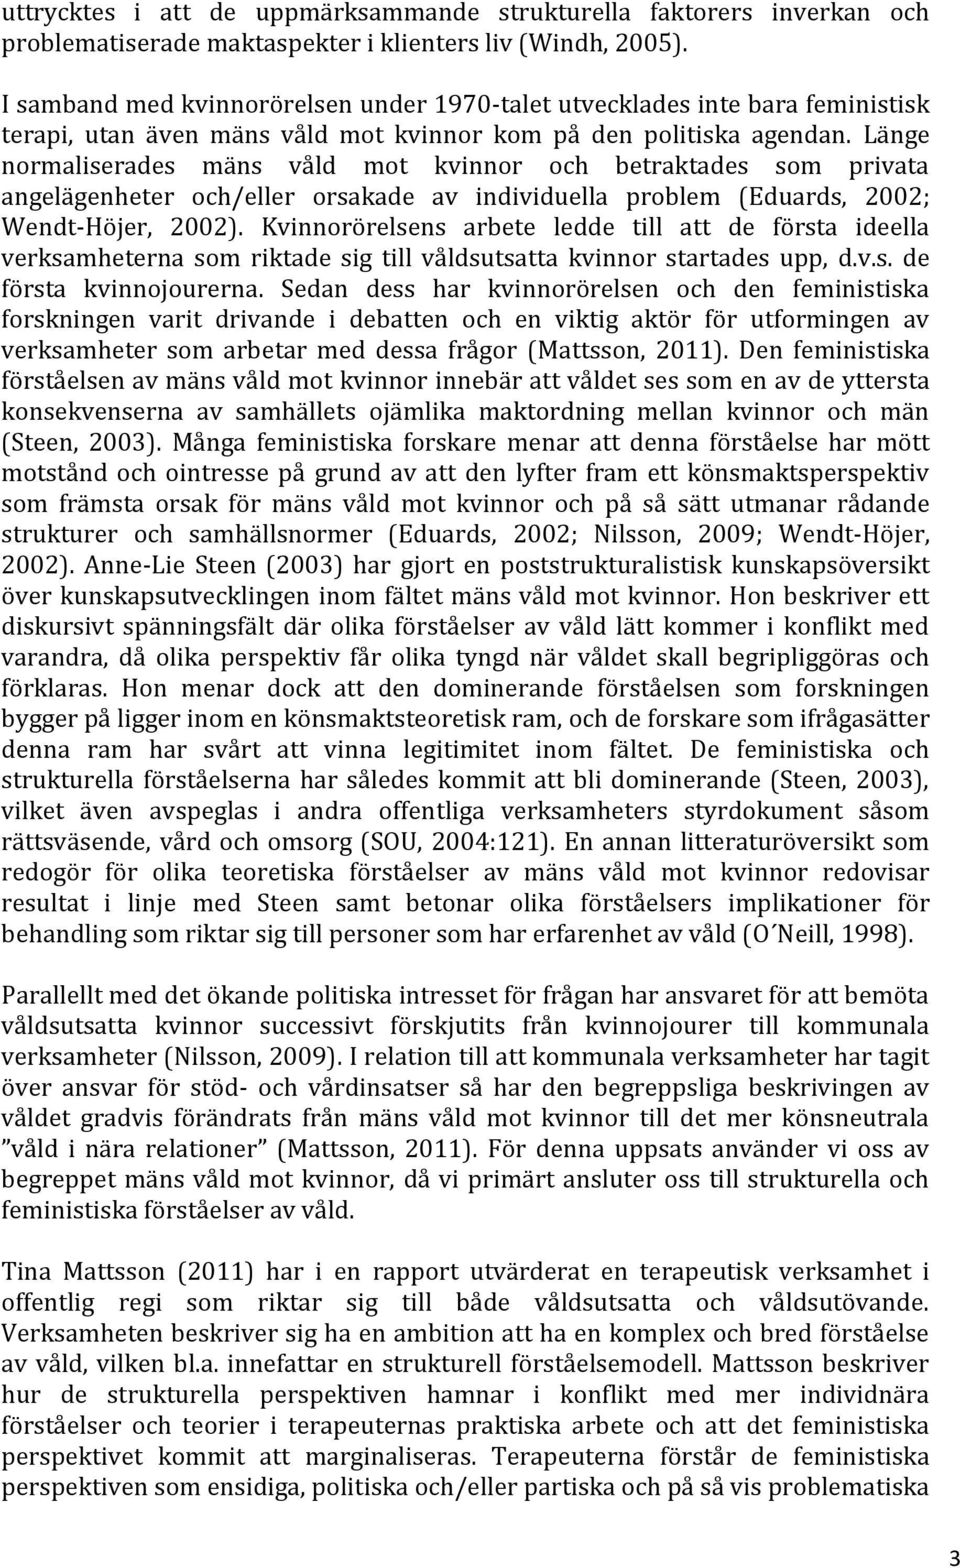 Länge normaliserades mäns våld mot kvinnor och betraktades som privata angelägenheter och/eller orsakade av individuella problem (Eduards, 2002; Wendt-Höjer, 2002).